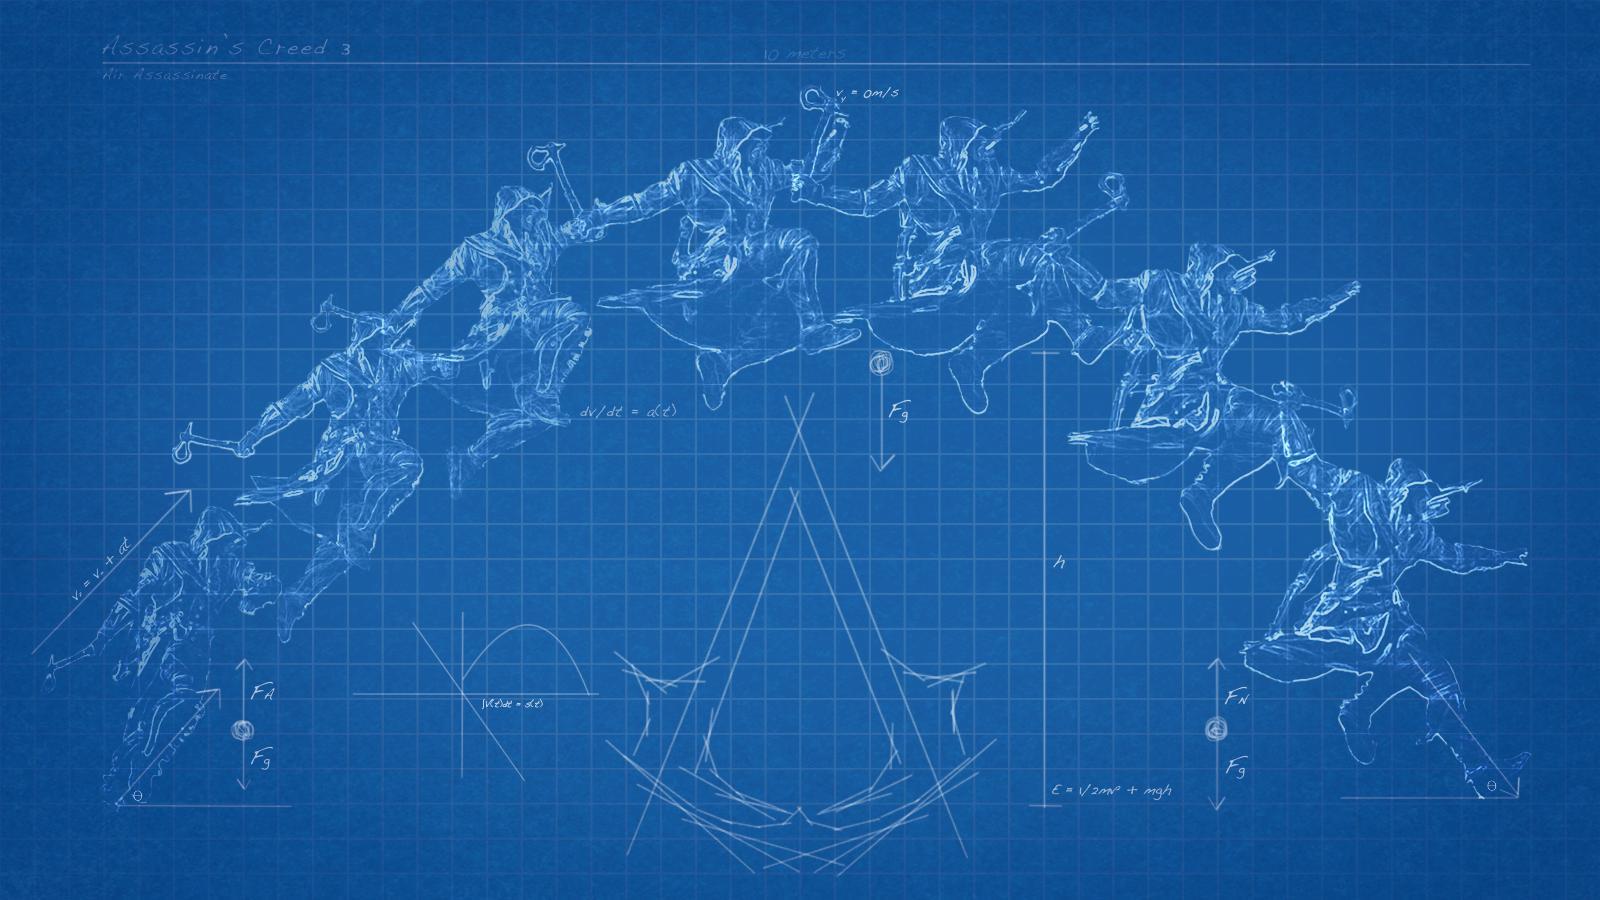 Assassins Creed 3 Blueprint Wallpaper